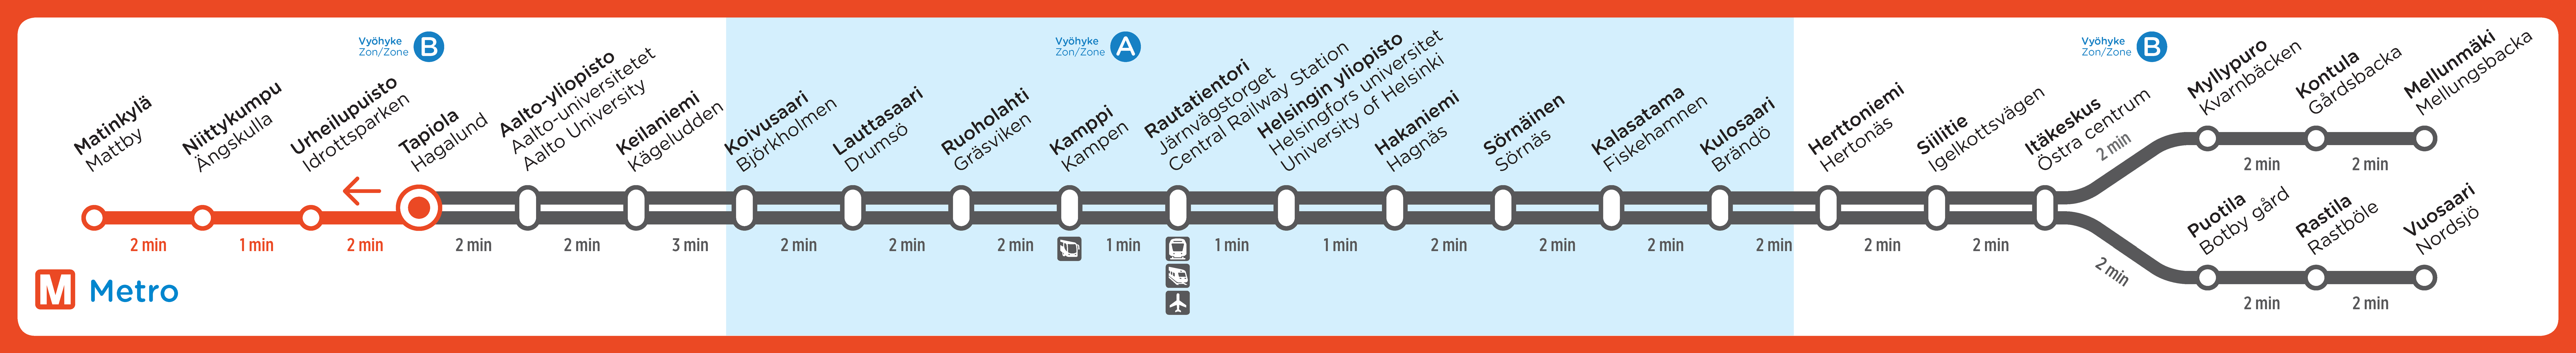 Uusittu kartta Tapiolan metroaseman lännen suunnan raiteilla